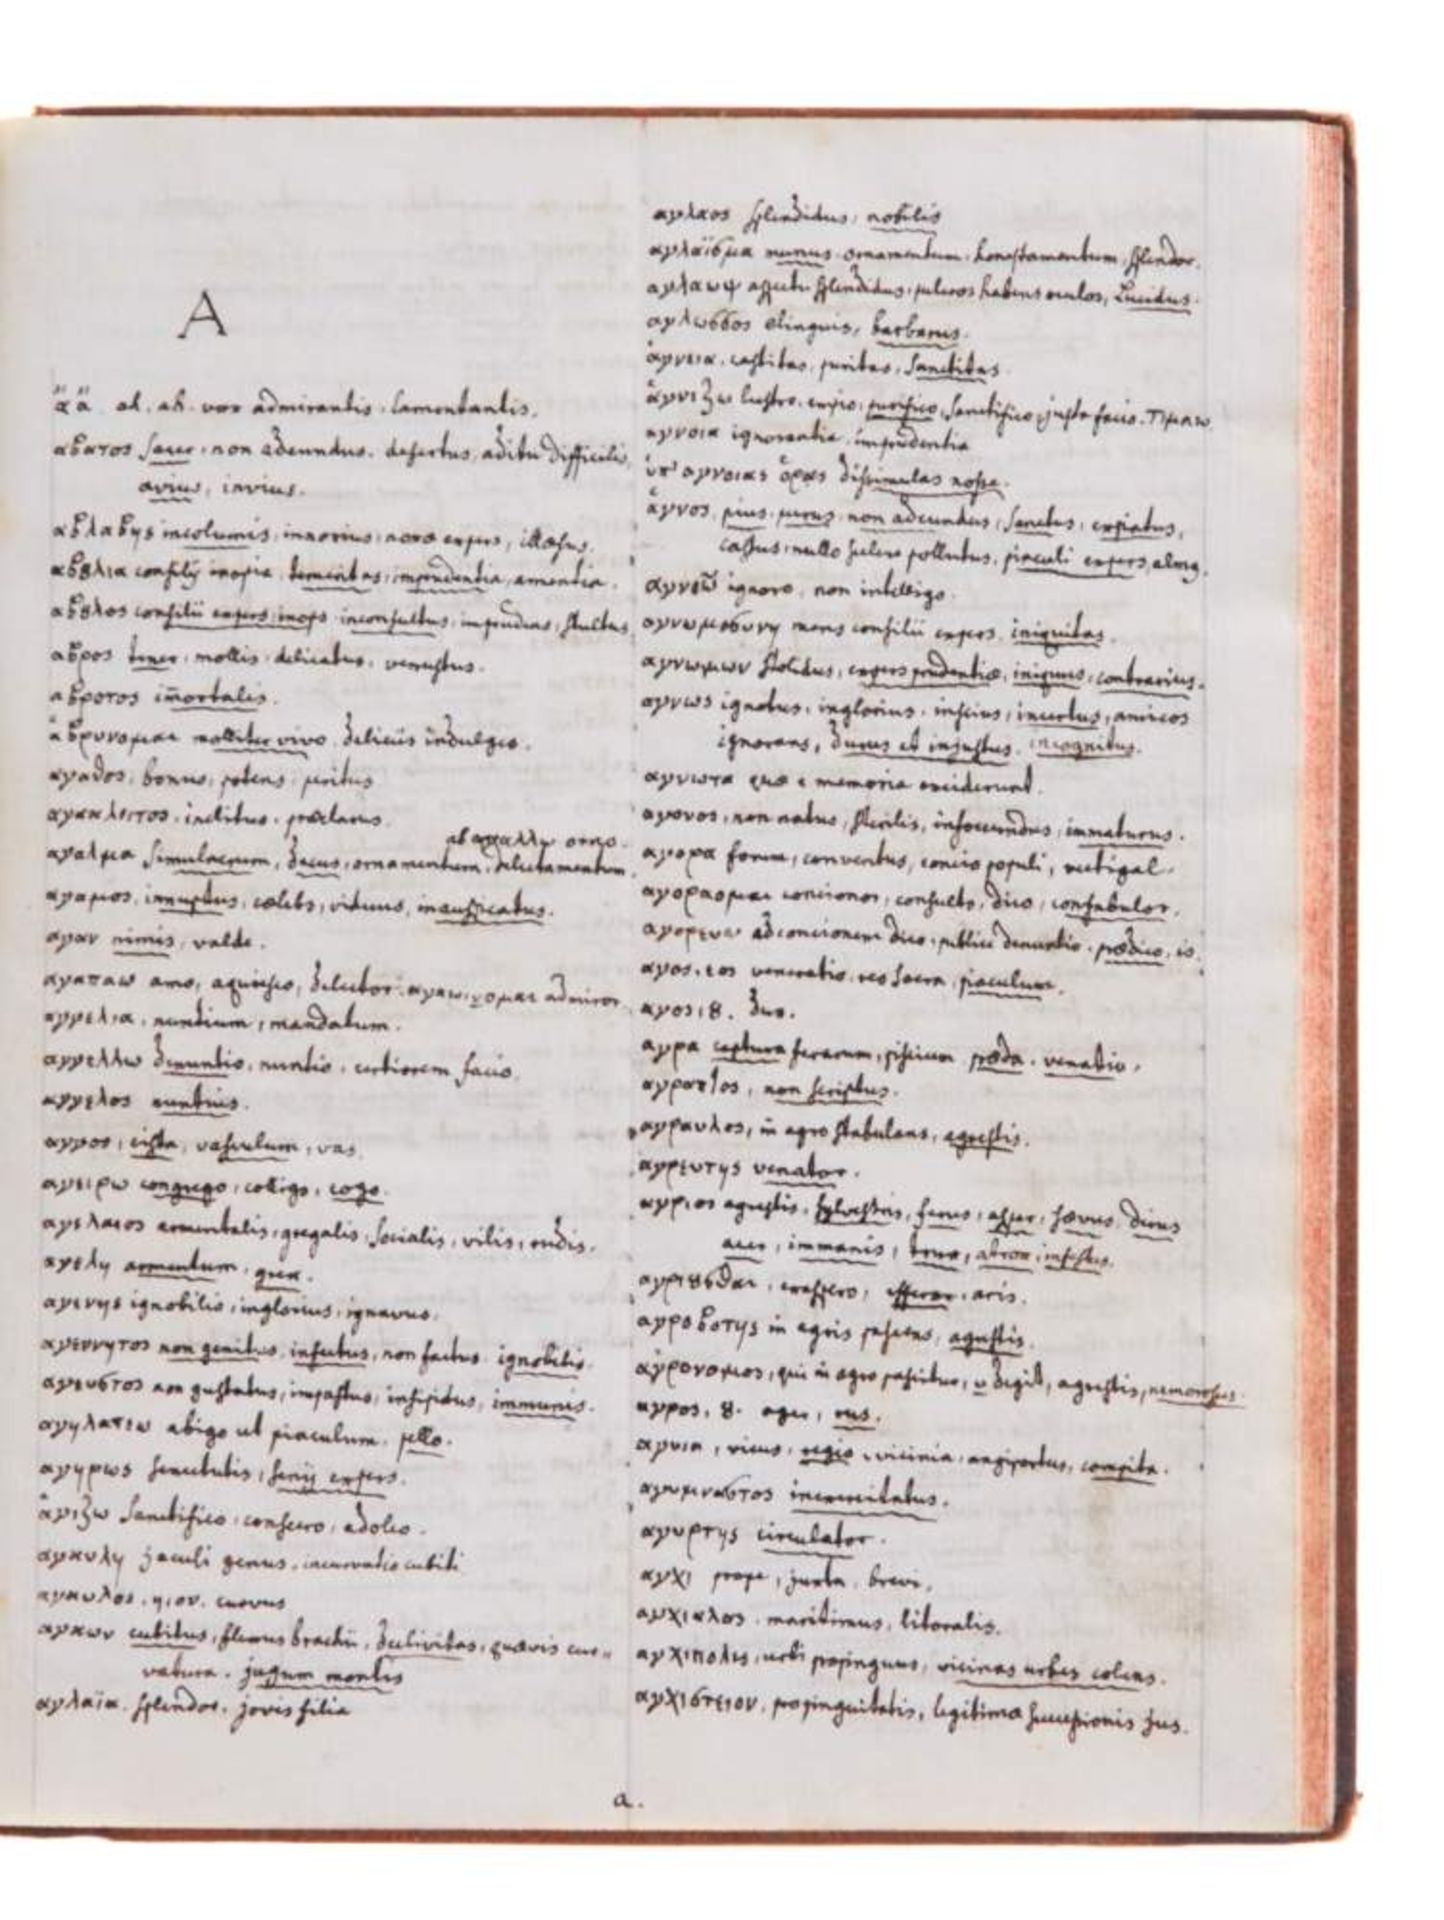 Griechisch-lateinisches Wörterbuch. Zweisprachige Handschrift auf Papier. Wohl Deutschland, um 1800. - Bild 2 aus 3